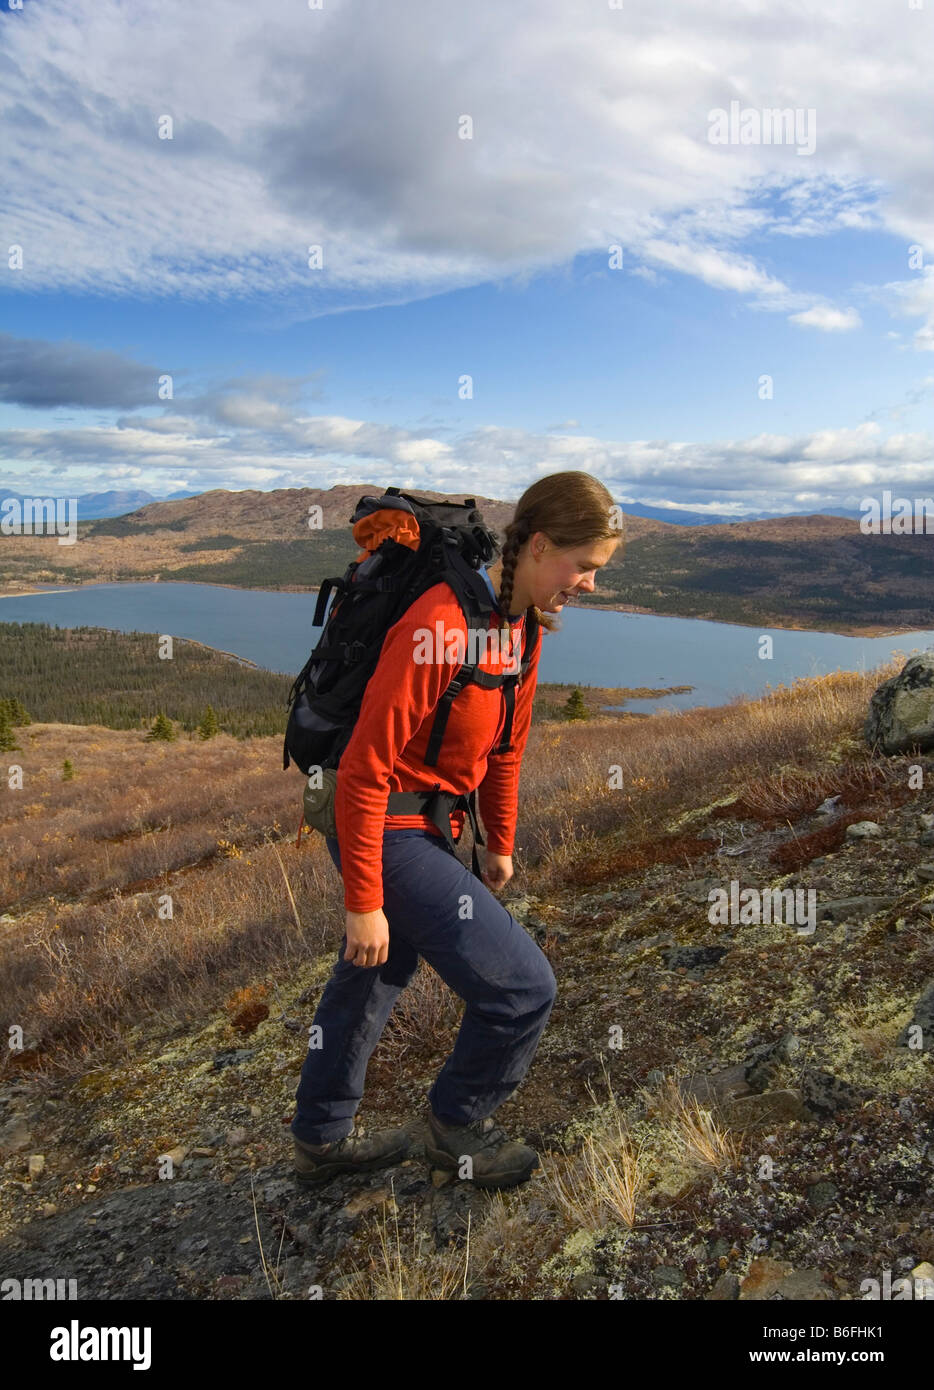 Jeune femme la randonnée, la toundra alpine, poisson du lac derrière, couleurs d'automne, Territoire du Yukon, Canada, Amérique du Nord Banque D'Images